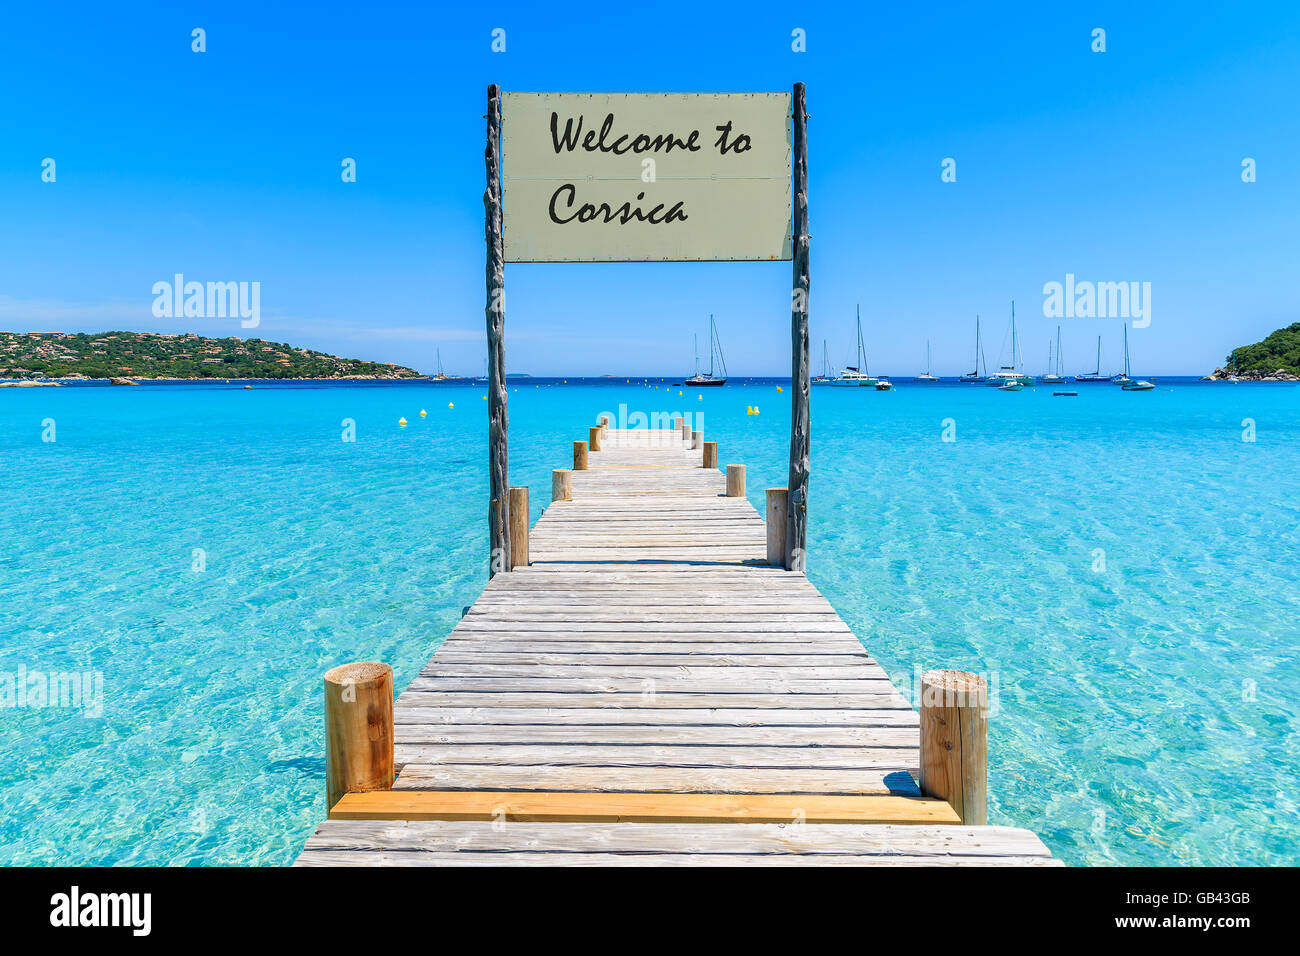 Inscrivez-vous sur la jetée en bois sur la plage de Santa Giulia avec les mots 'Bienvenue en Corse' peint accueil à bord, Corse, France Banque D'Images